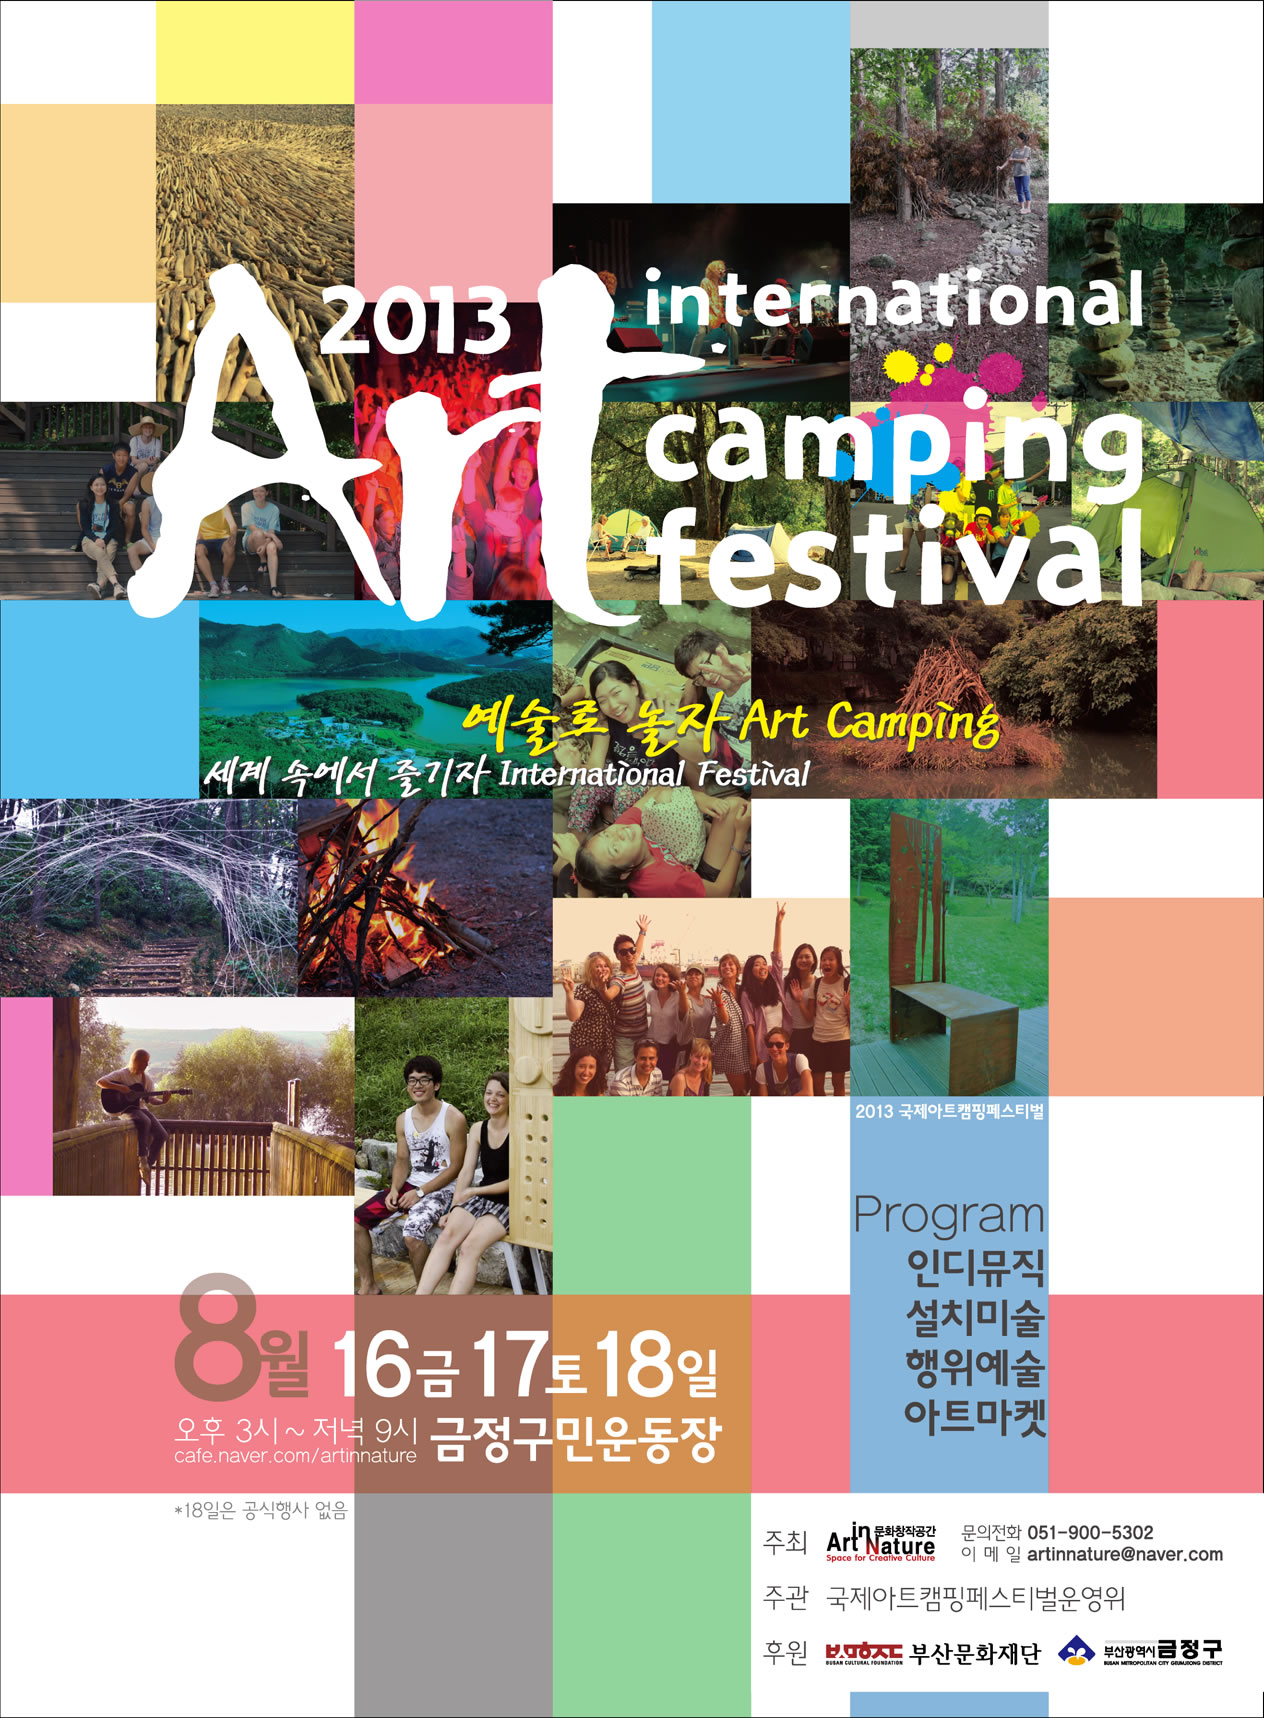 2013, 가족과 함께하는 부산국제아트캠핑 페스티벌